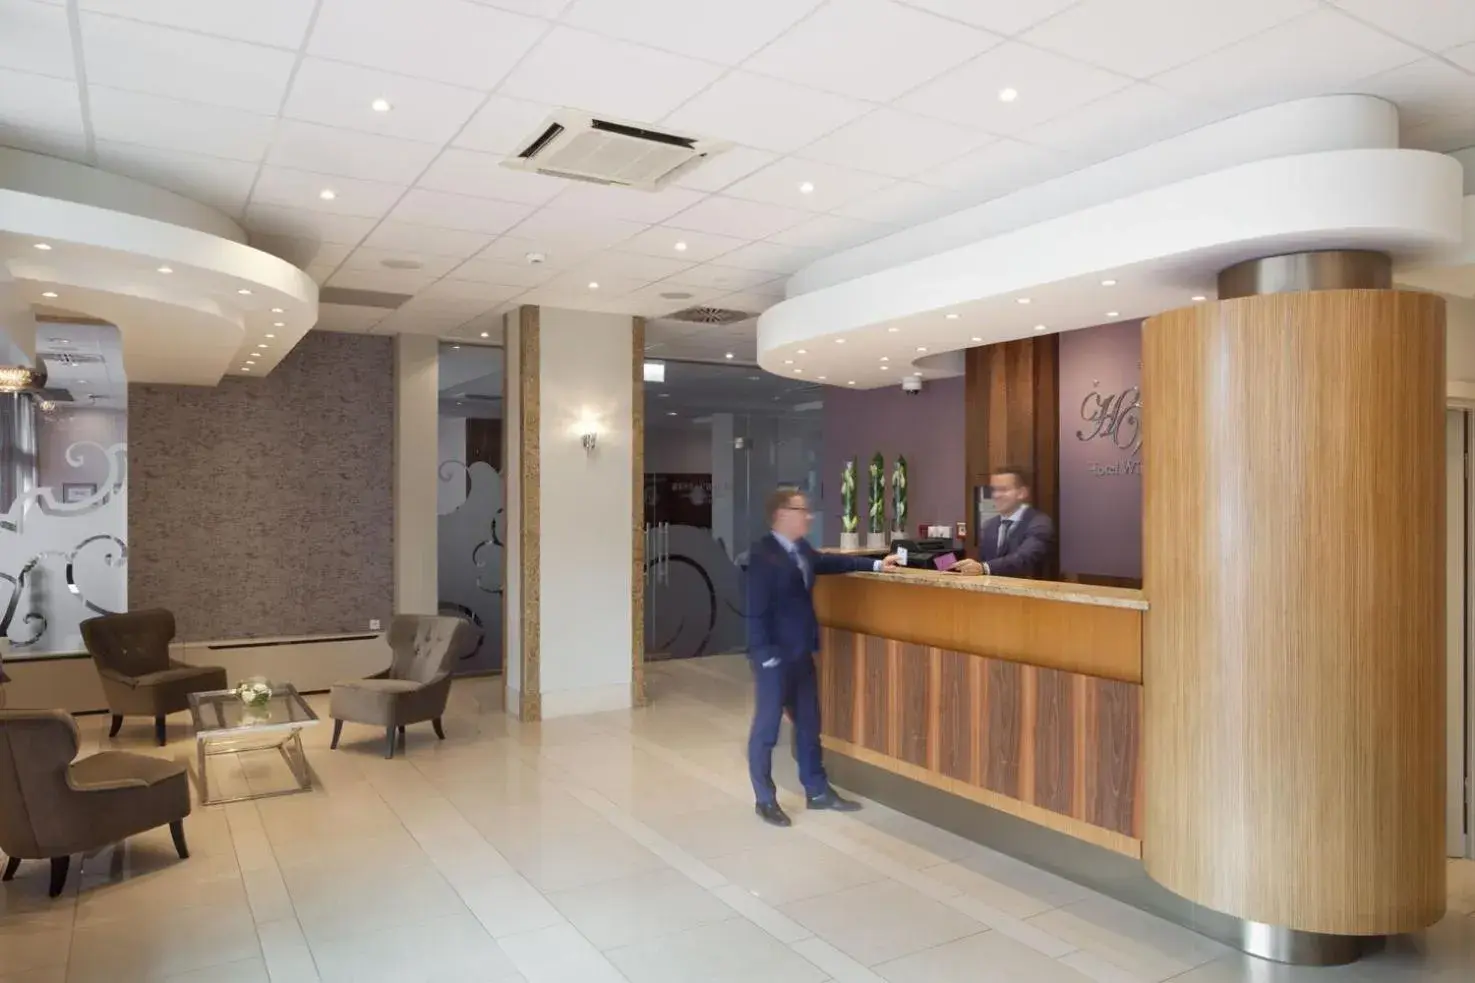 Lobby or reception, Lobby/Reception in Hotel Witkowski